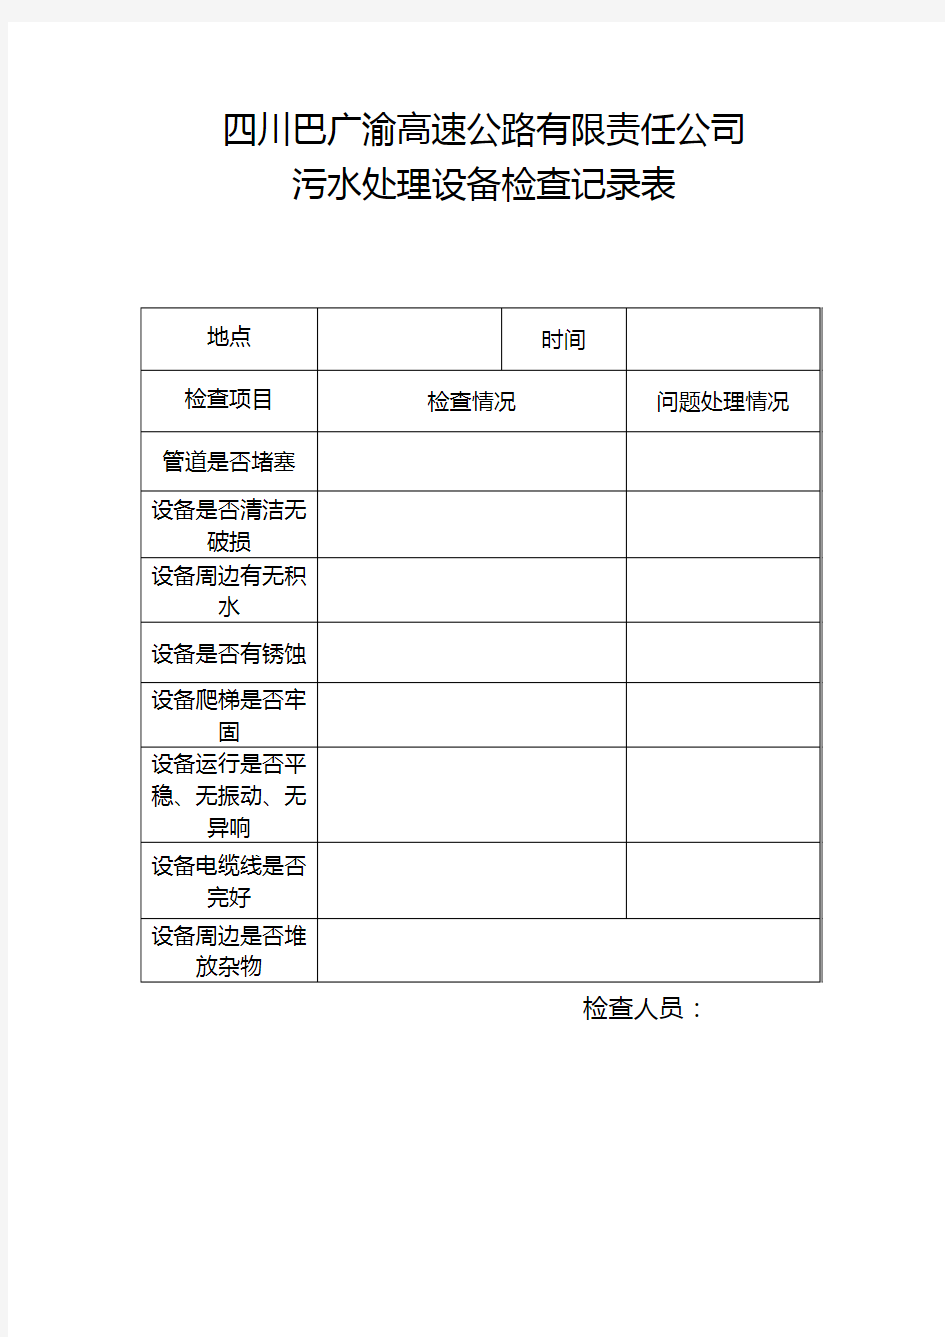 污水处理设备巡查记录表 (1)